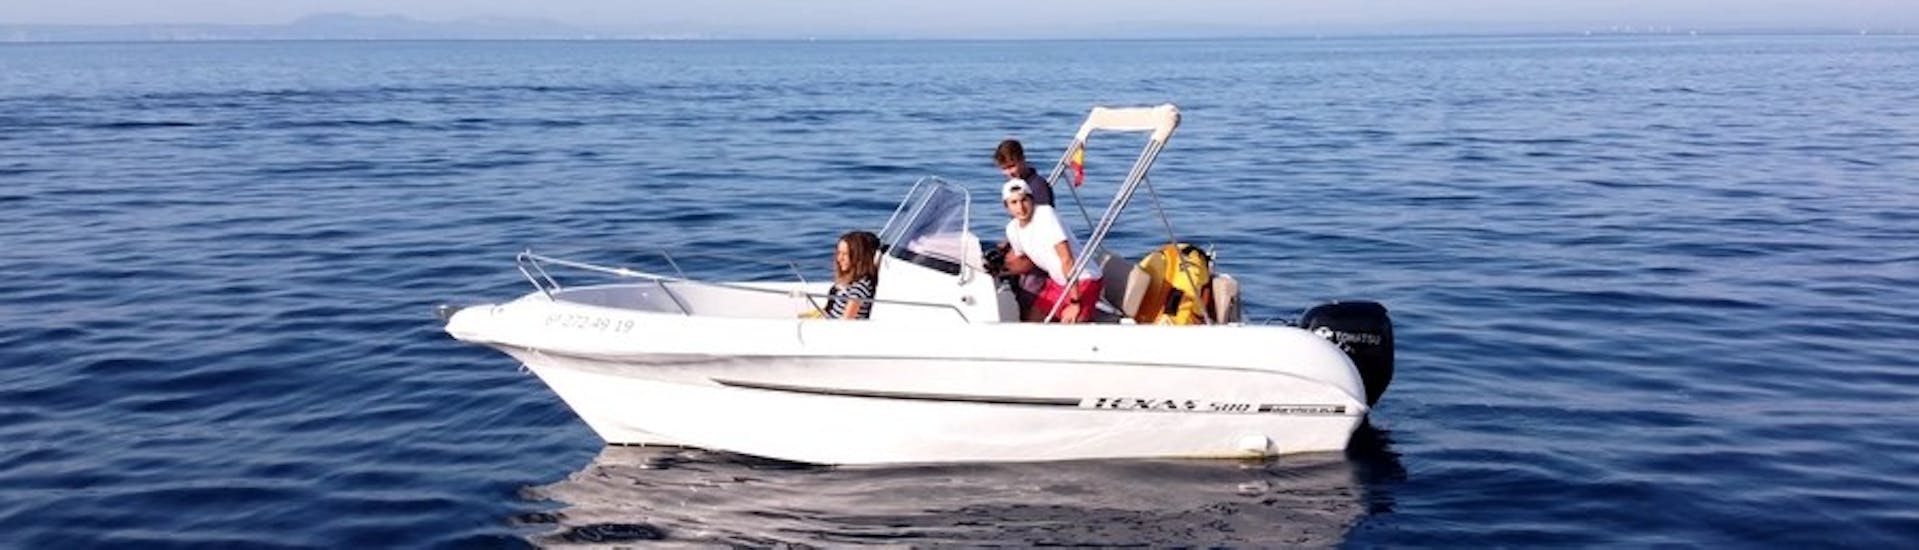 La moderna lancha TEXAS 580 con un grupo de participantes divirtiéndose mientras navegan por las aguas turquesas de la bahía de roses durante un alquiler de barco en la Costa Brava para hasta 6 personas con licencia con Maxi Boats.